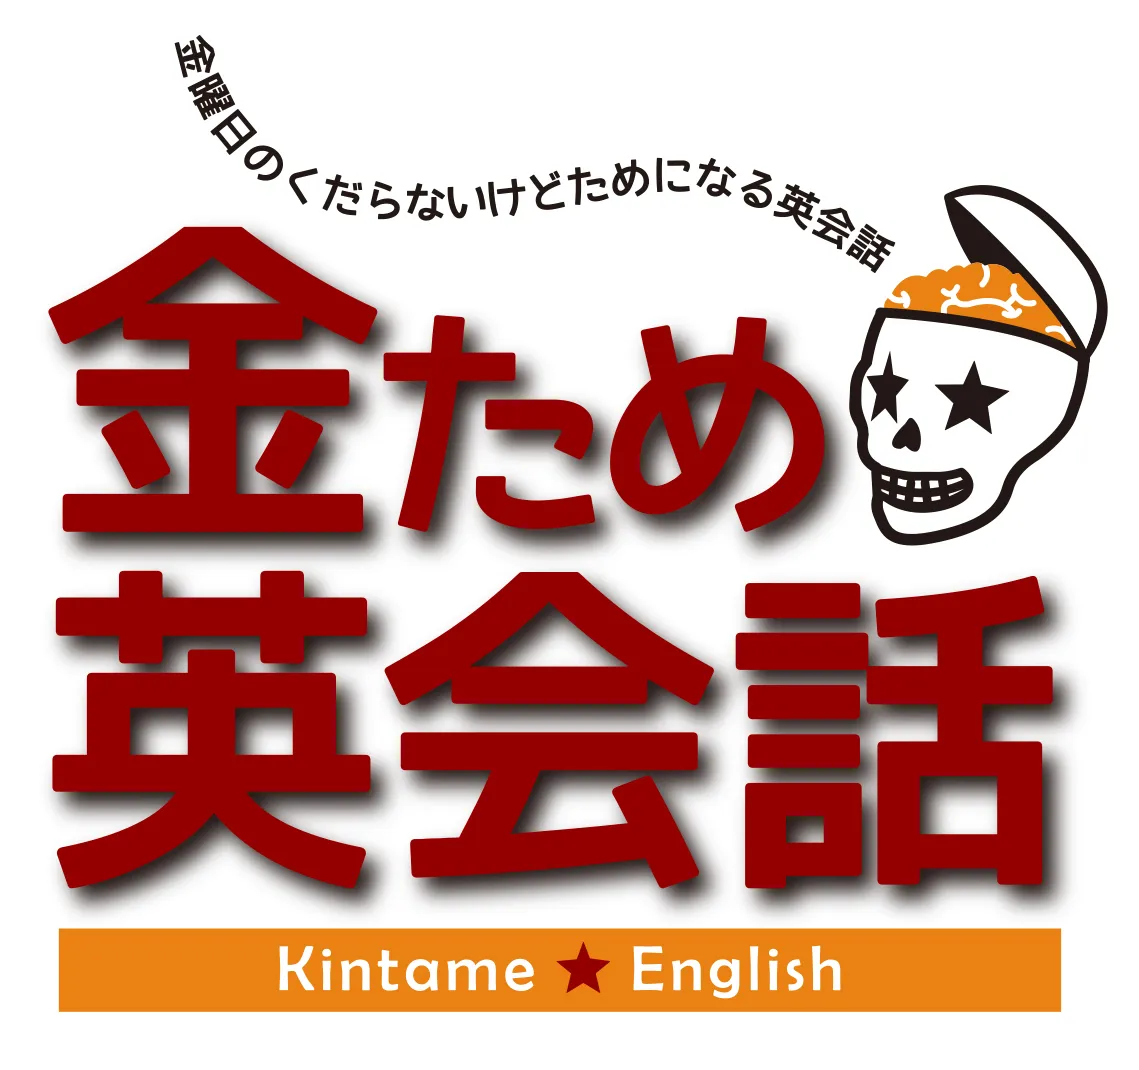 「金ため英会話」ロゴ